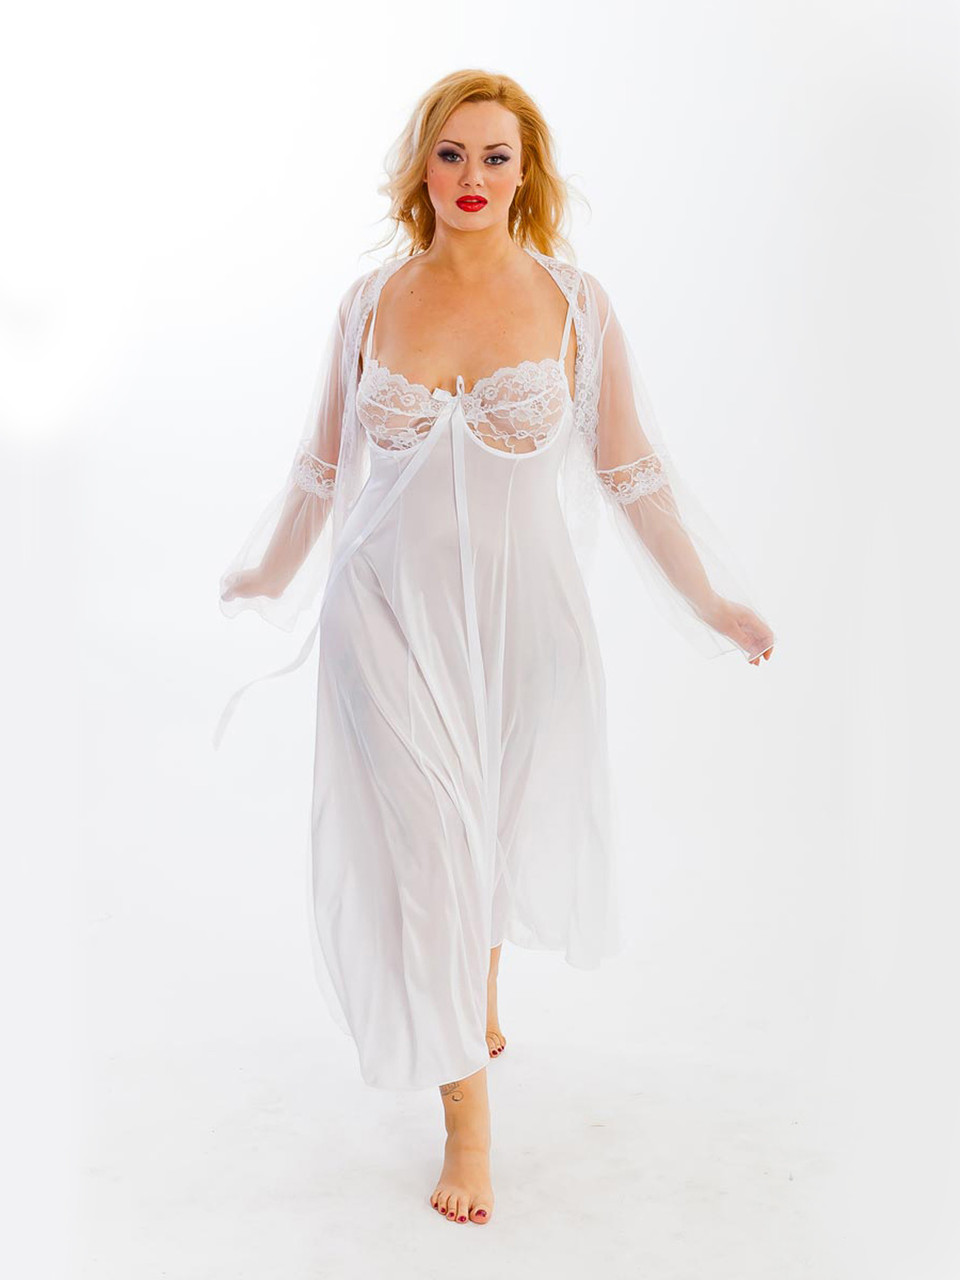 Plus Size Sexy Full Figure Long Gown Peignoir Lingerie Set 